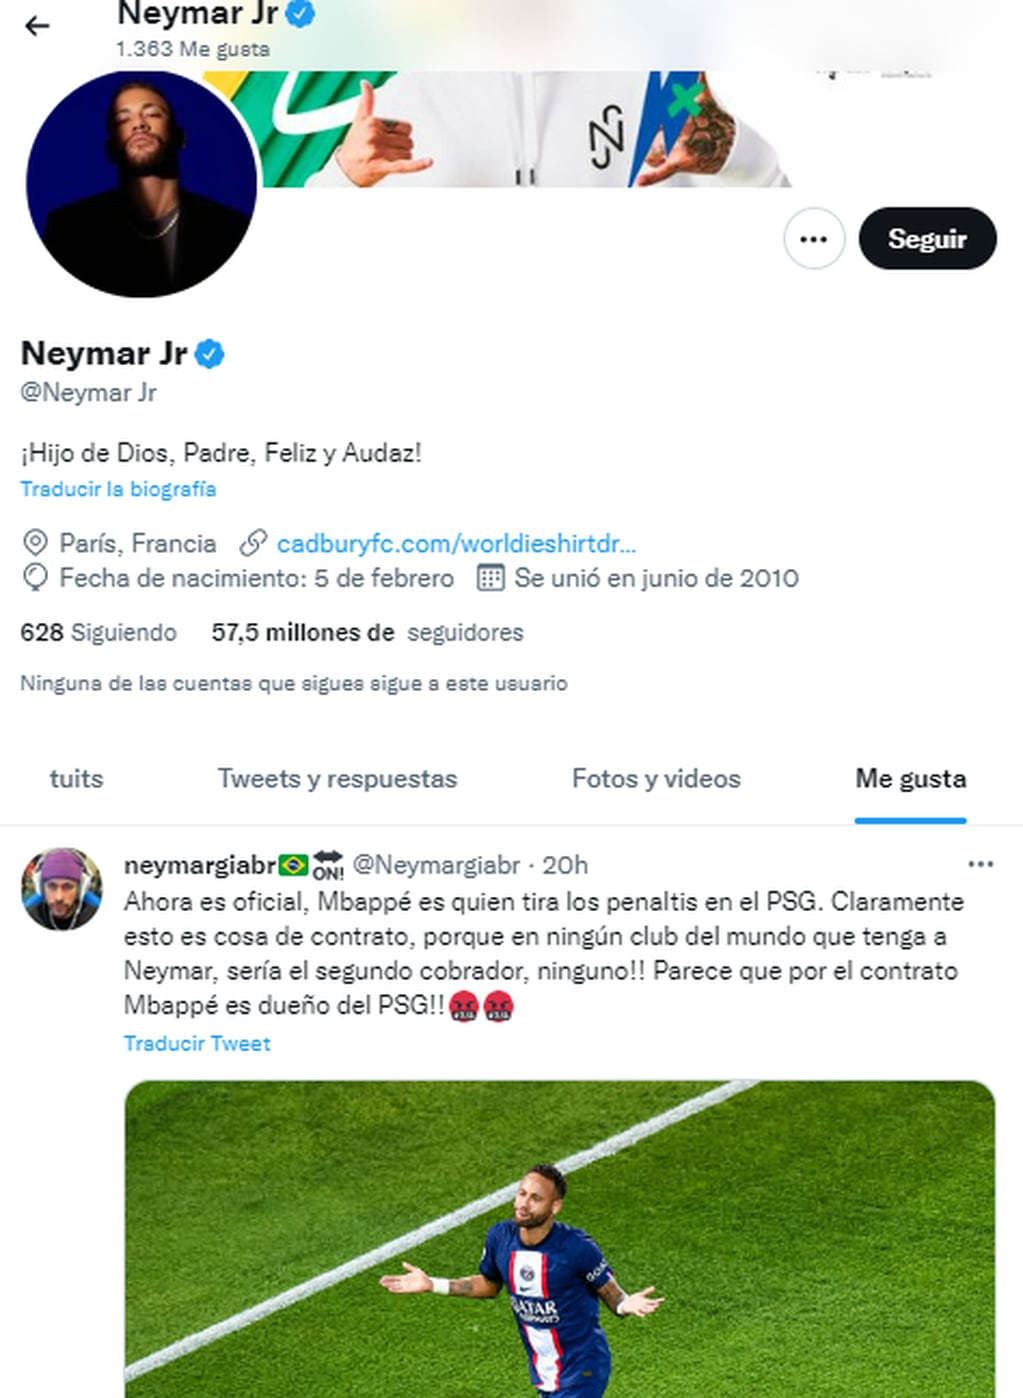 El "me gusta" de Neymar contra el futbolista francés.